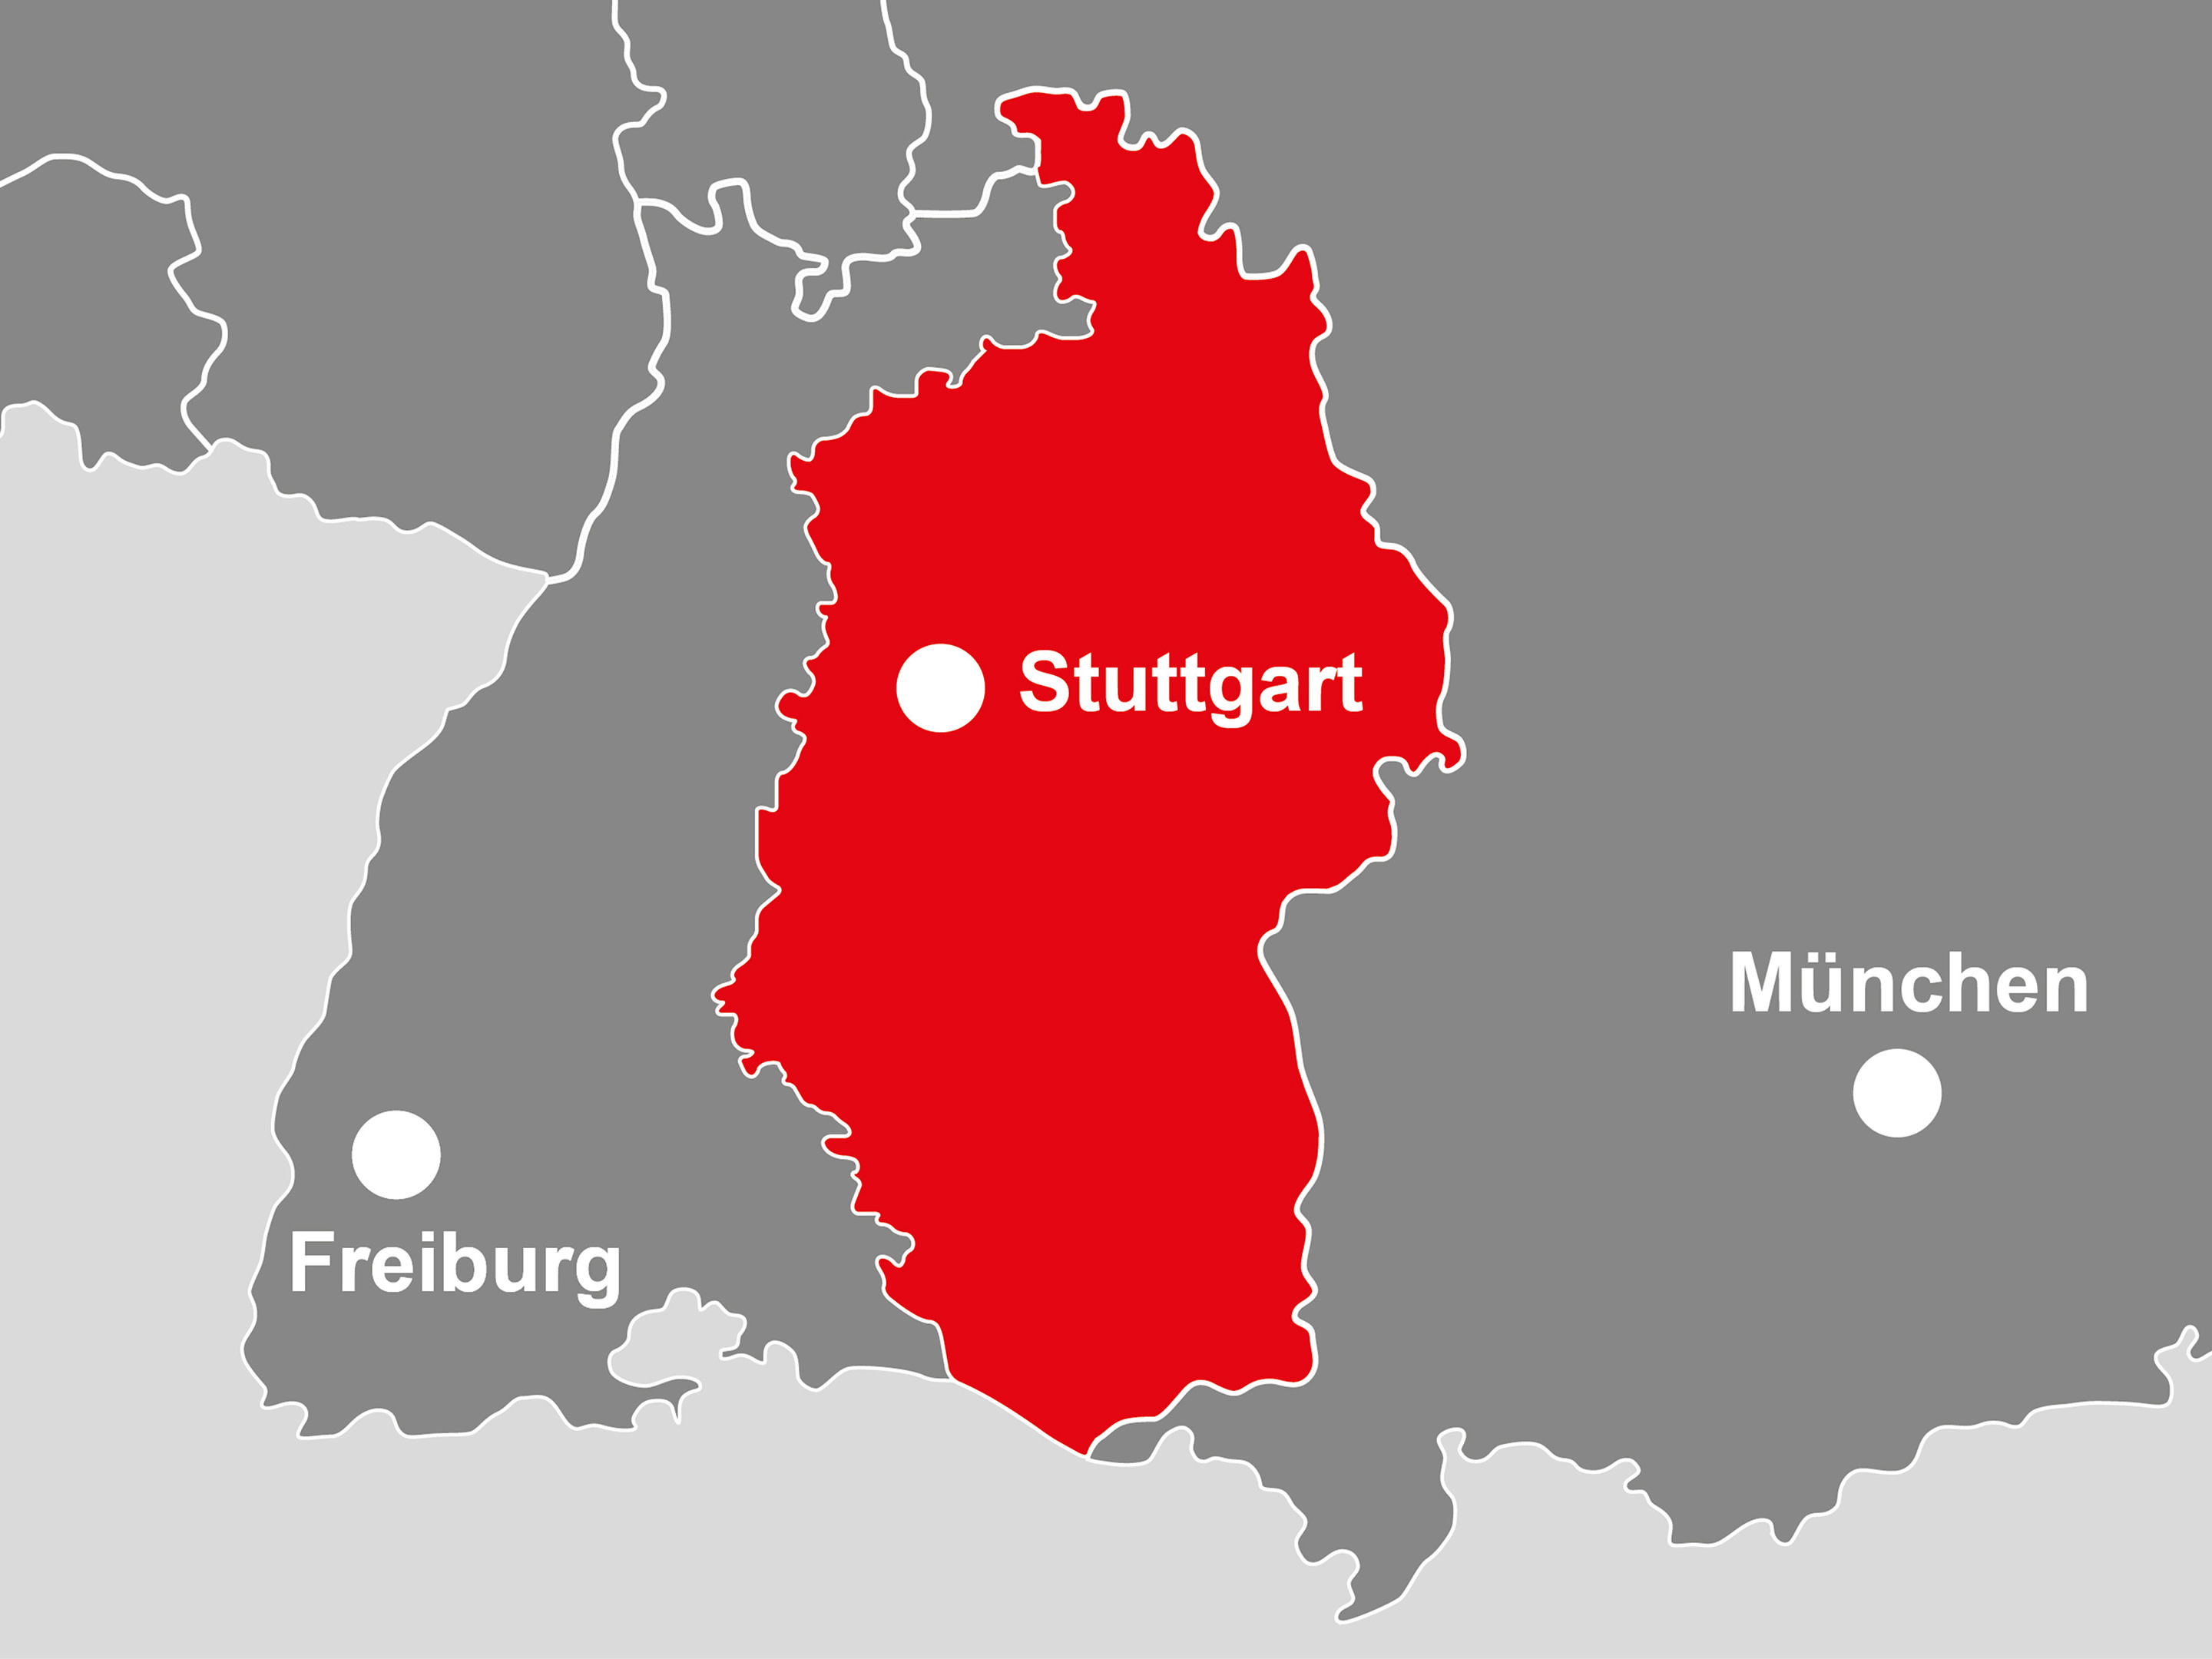 Bild: Die Landkarte zeigt Württenberg, dort wo der Bereich Stuttgart ankauft  